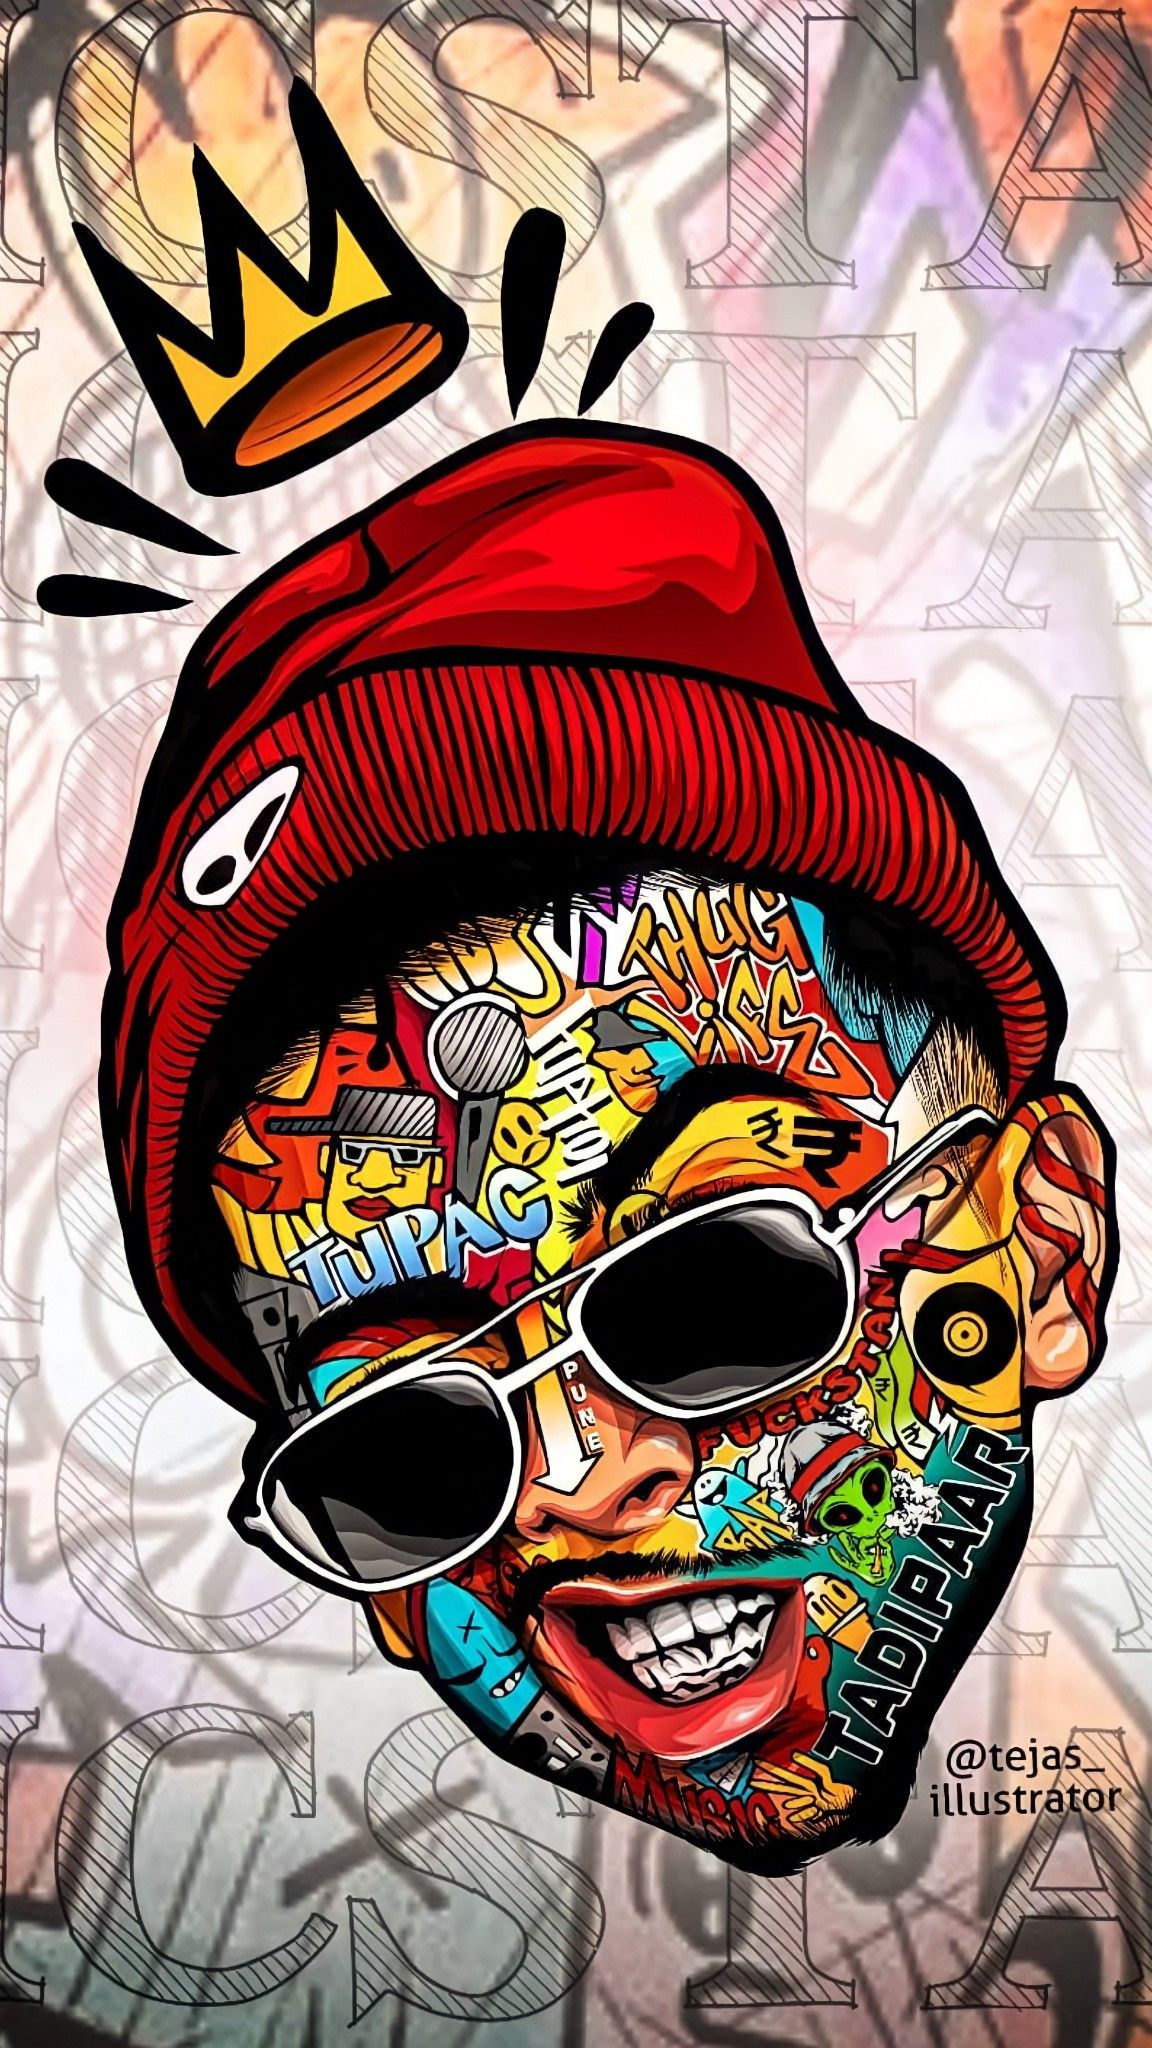 MC STAN WALLPAPER. Hiphop graffiti, Graffiti wallpaper iphone, Graffiti wallpaper